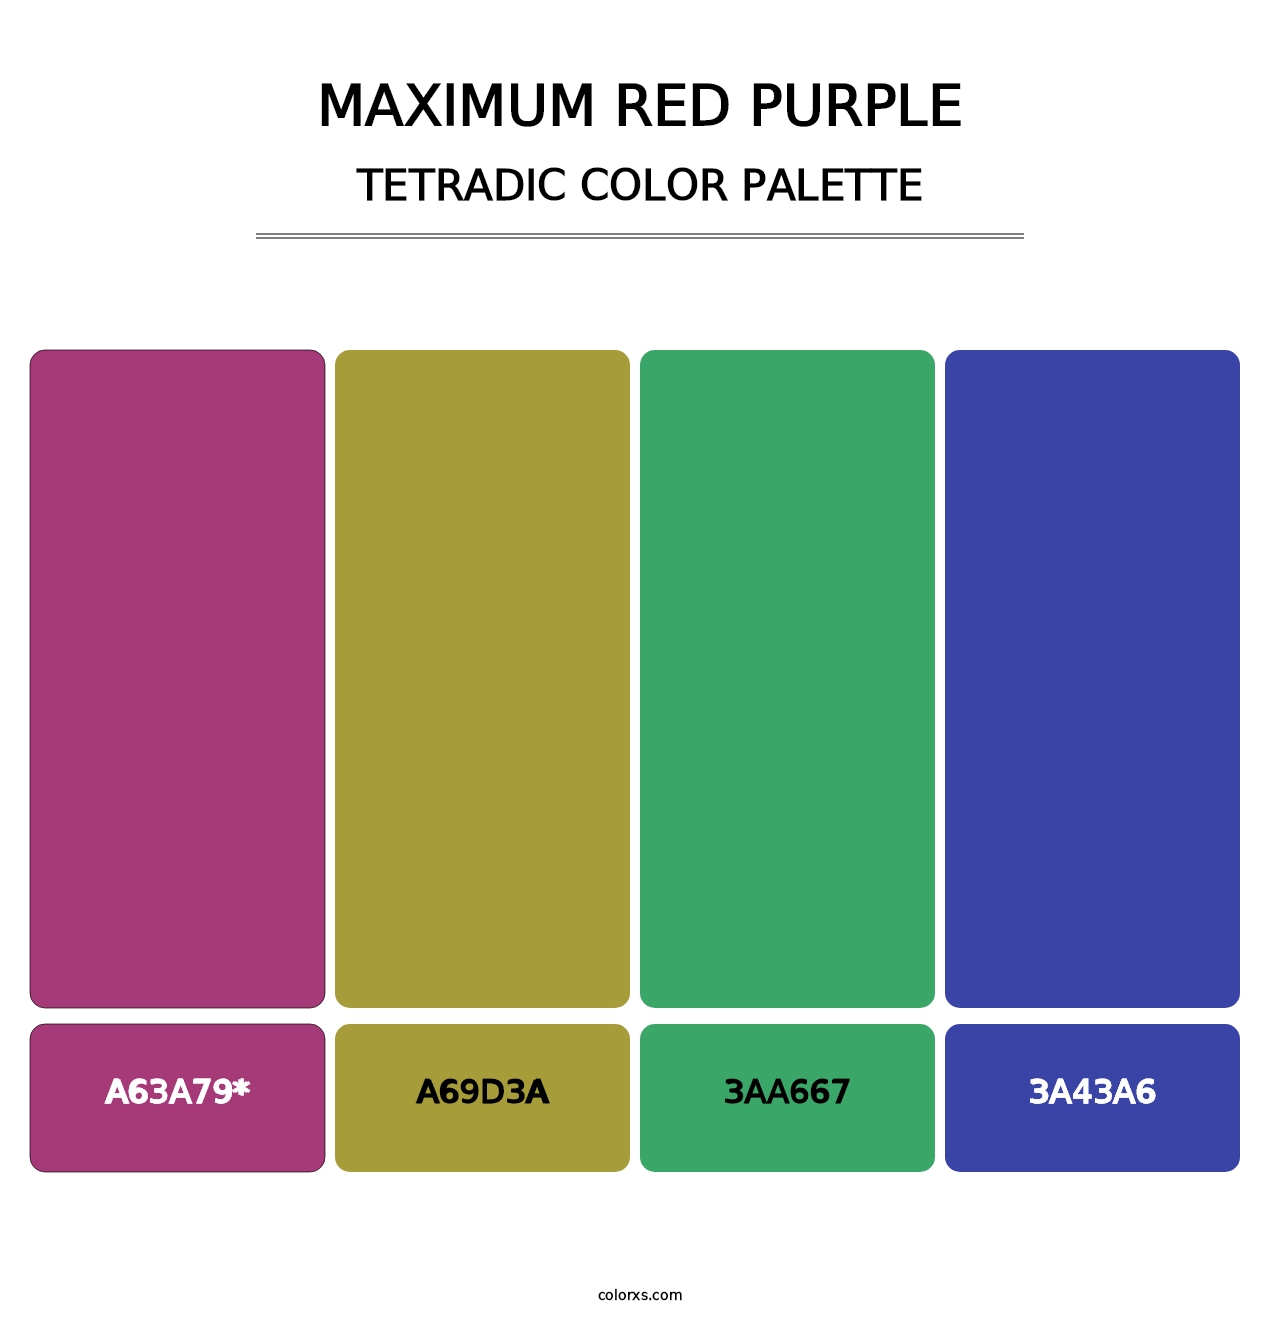 Maximum Red Purple - Tetradic Color Palette